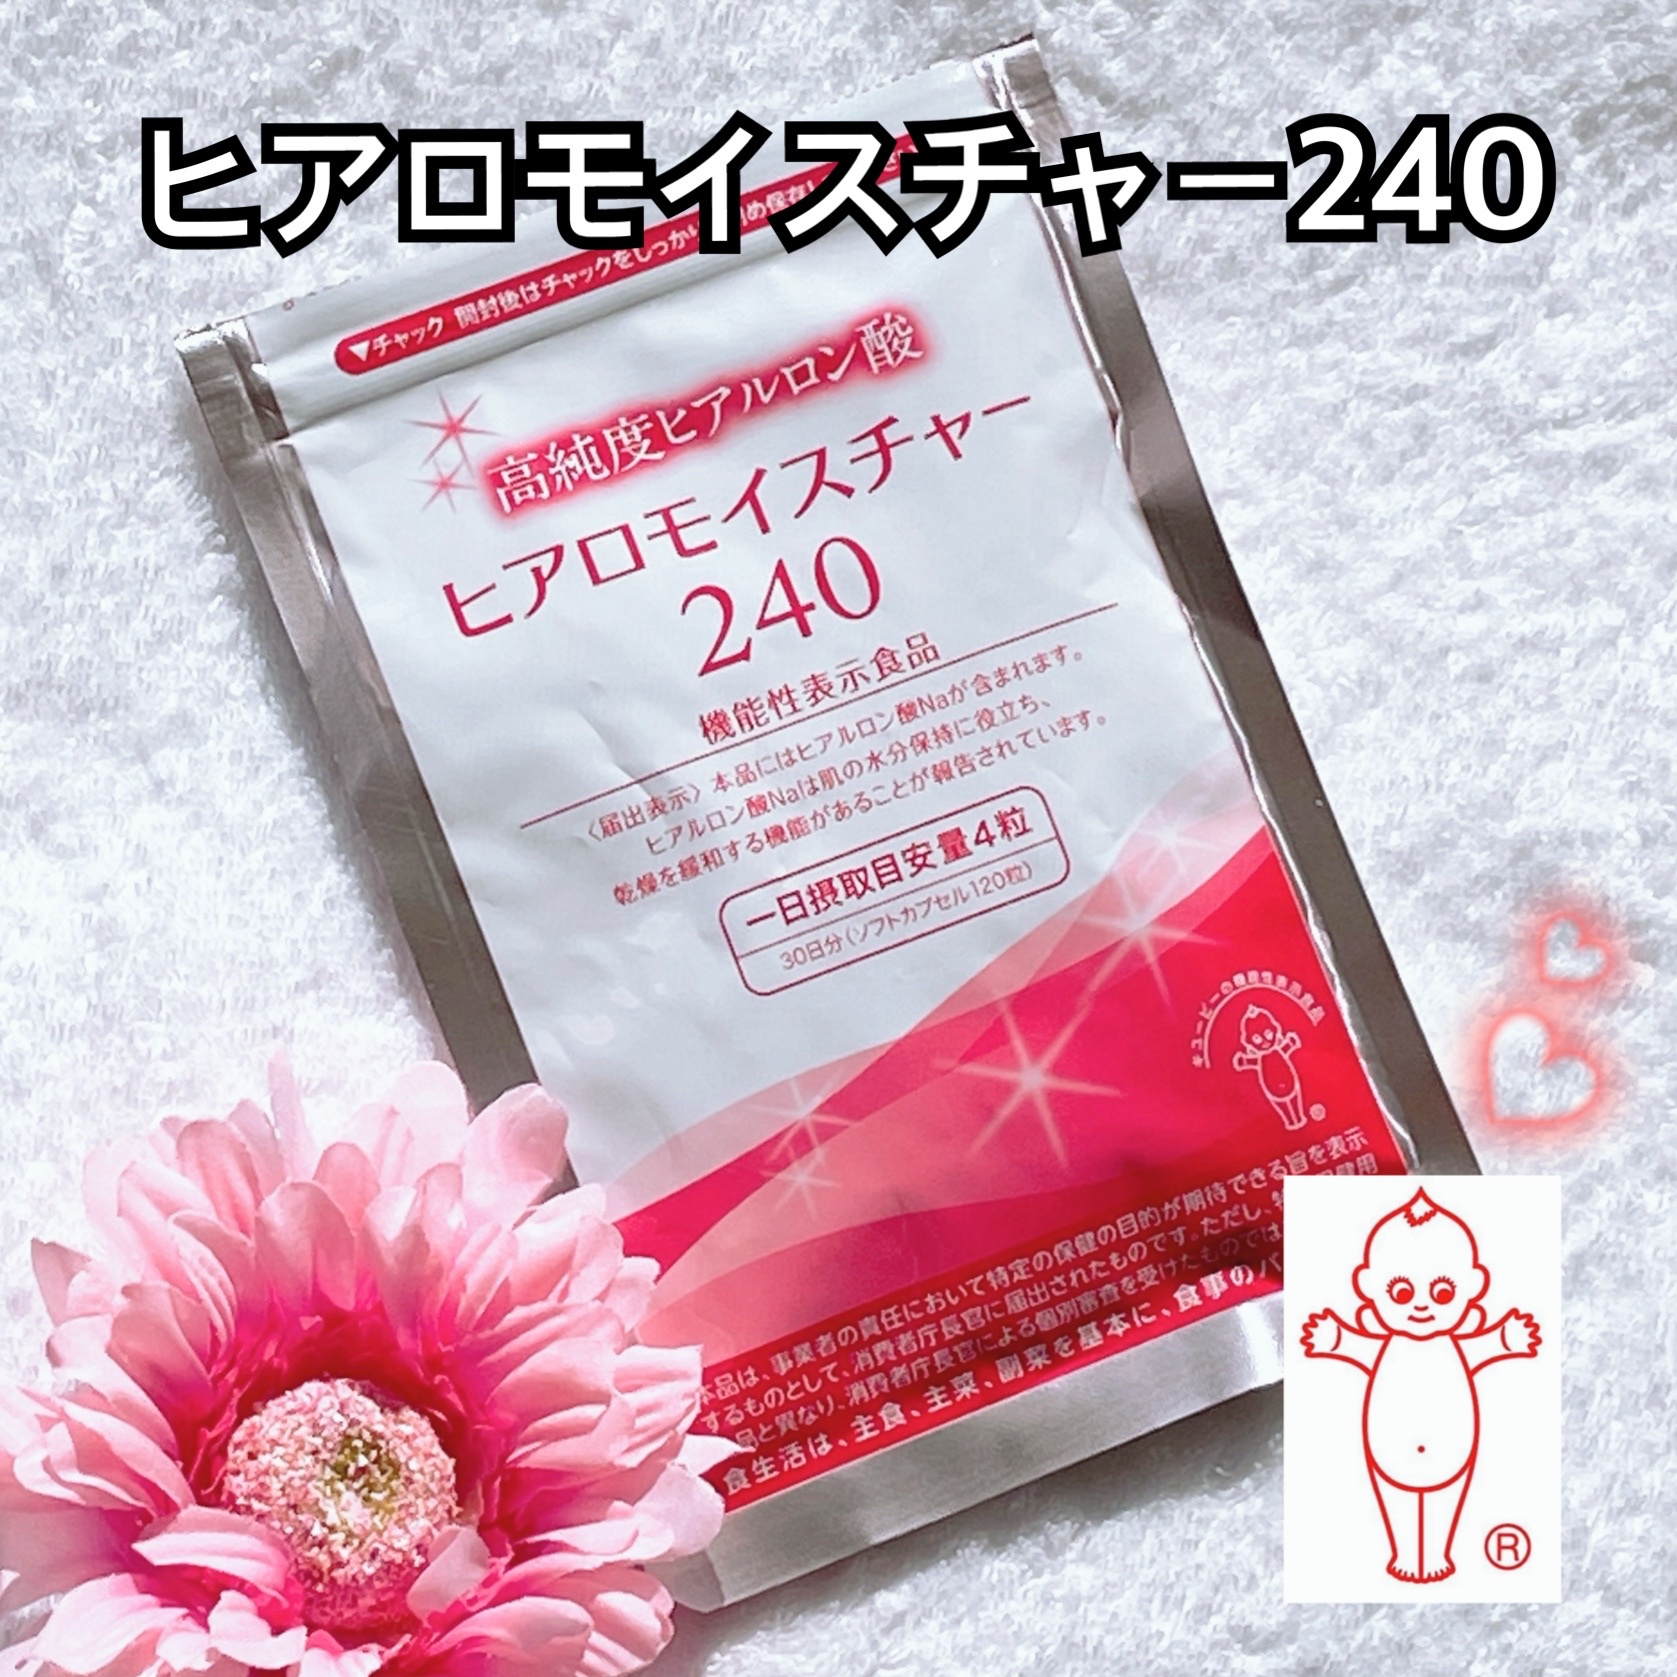 キユートピア / ヒアロモイスチャー240の公式商品情報｜美容・化粧品